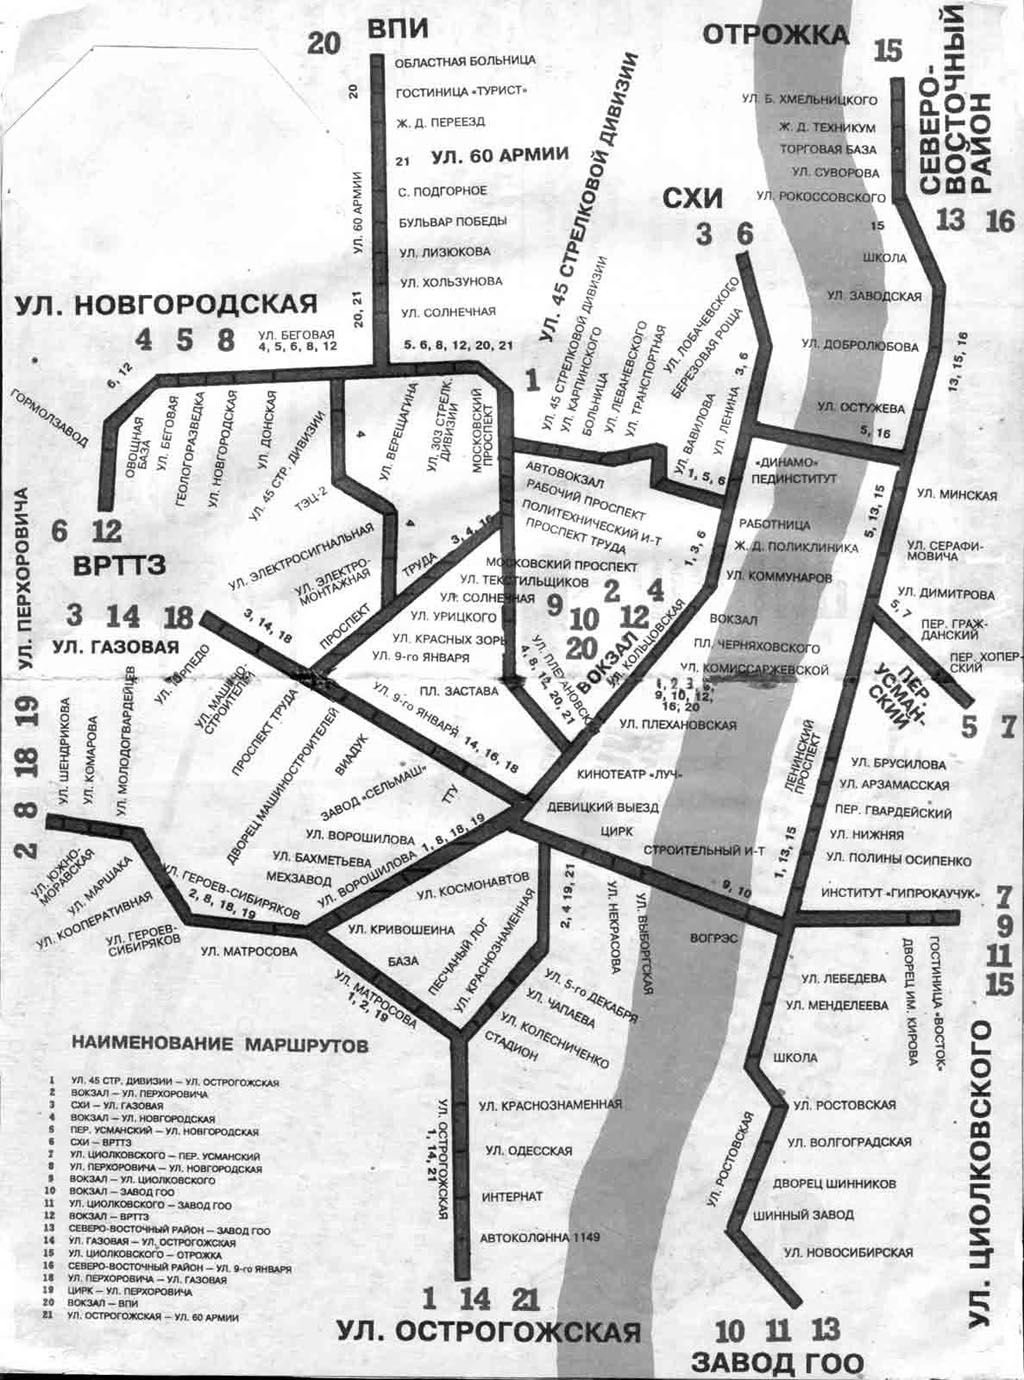 Voronezh — Maps